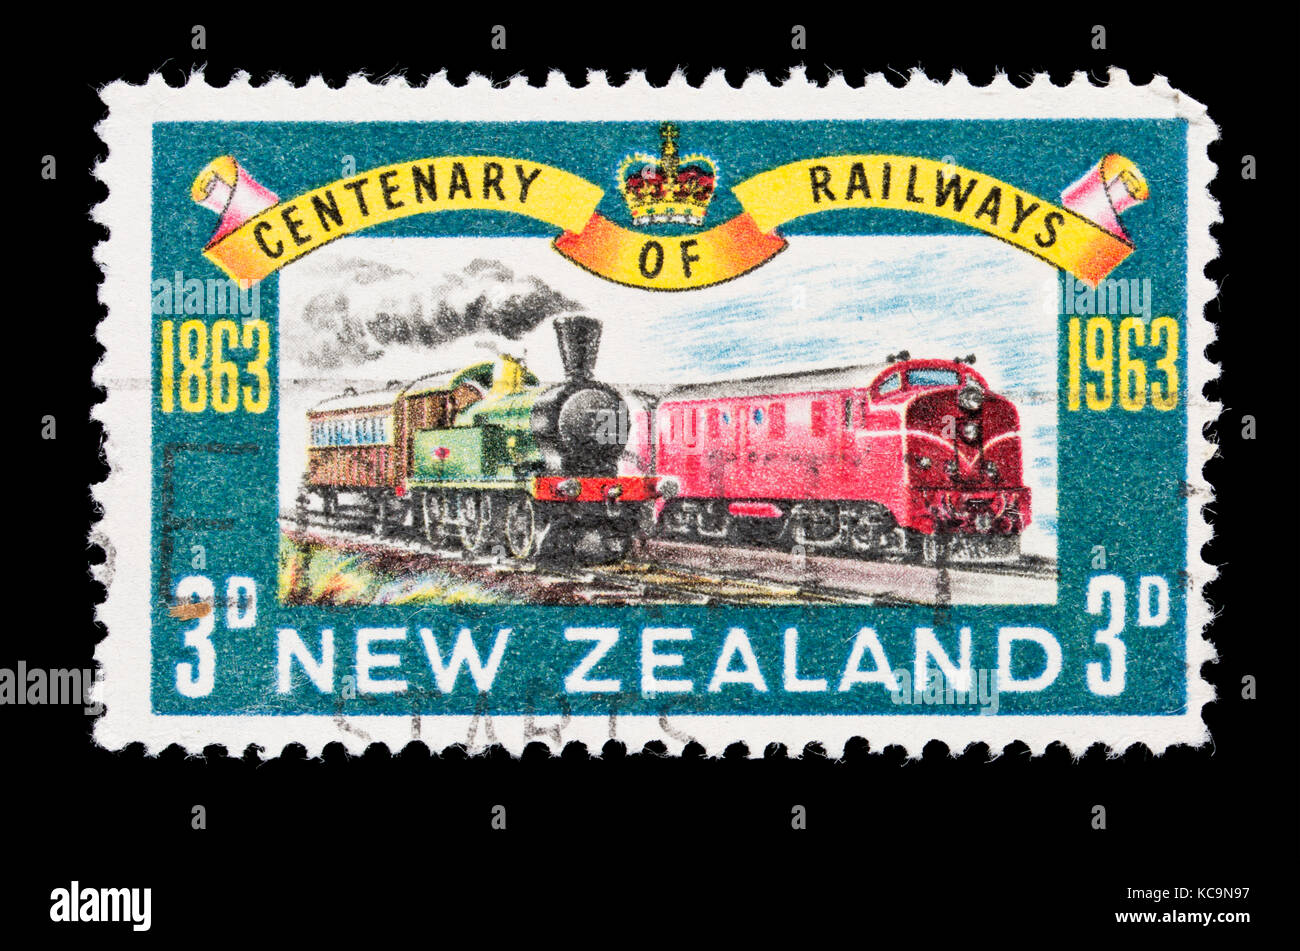 Timbre-poste de Nouvelle-zélande illustrant l'ancien et de nouvelles locomotives, pour le centenaire de la Nouvelle-Zélande de fer. Banque D'Images